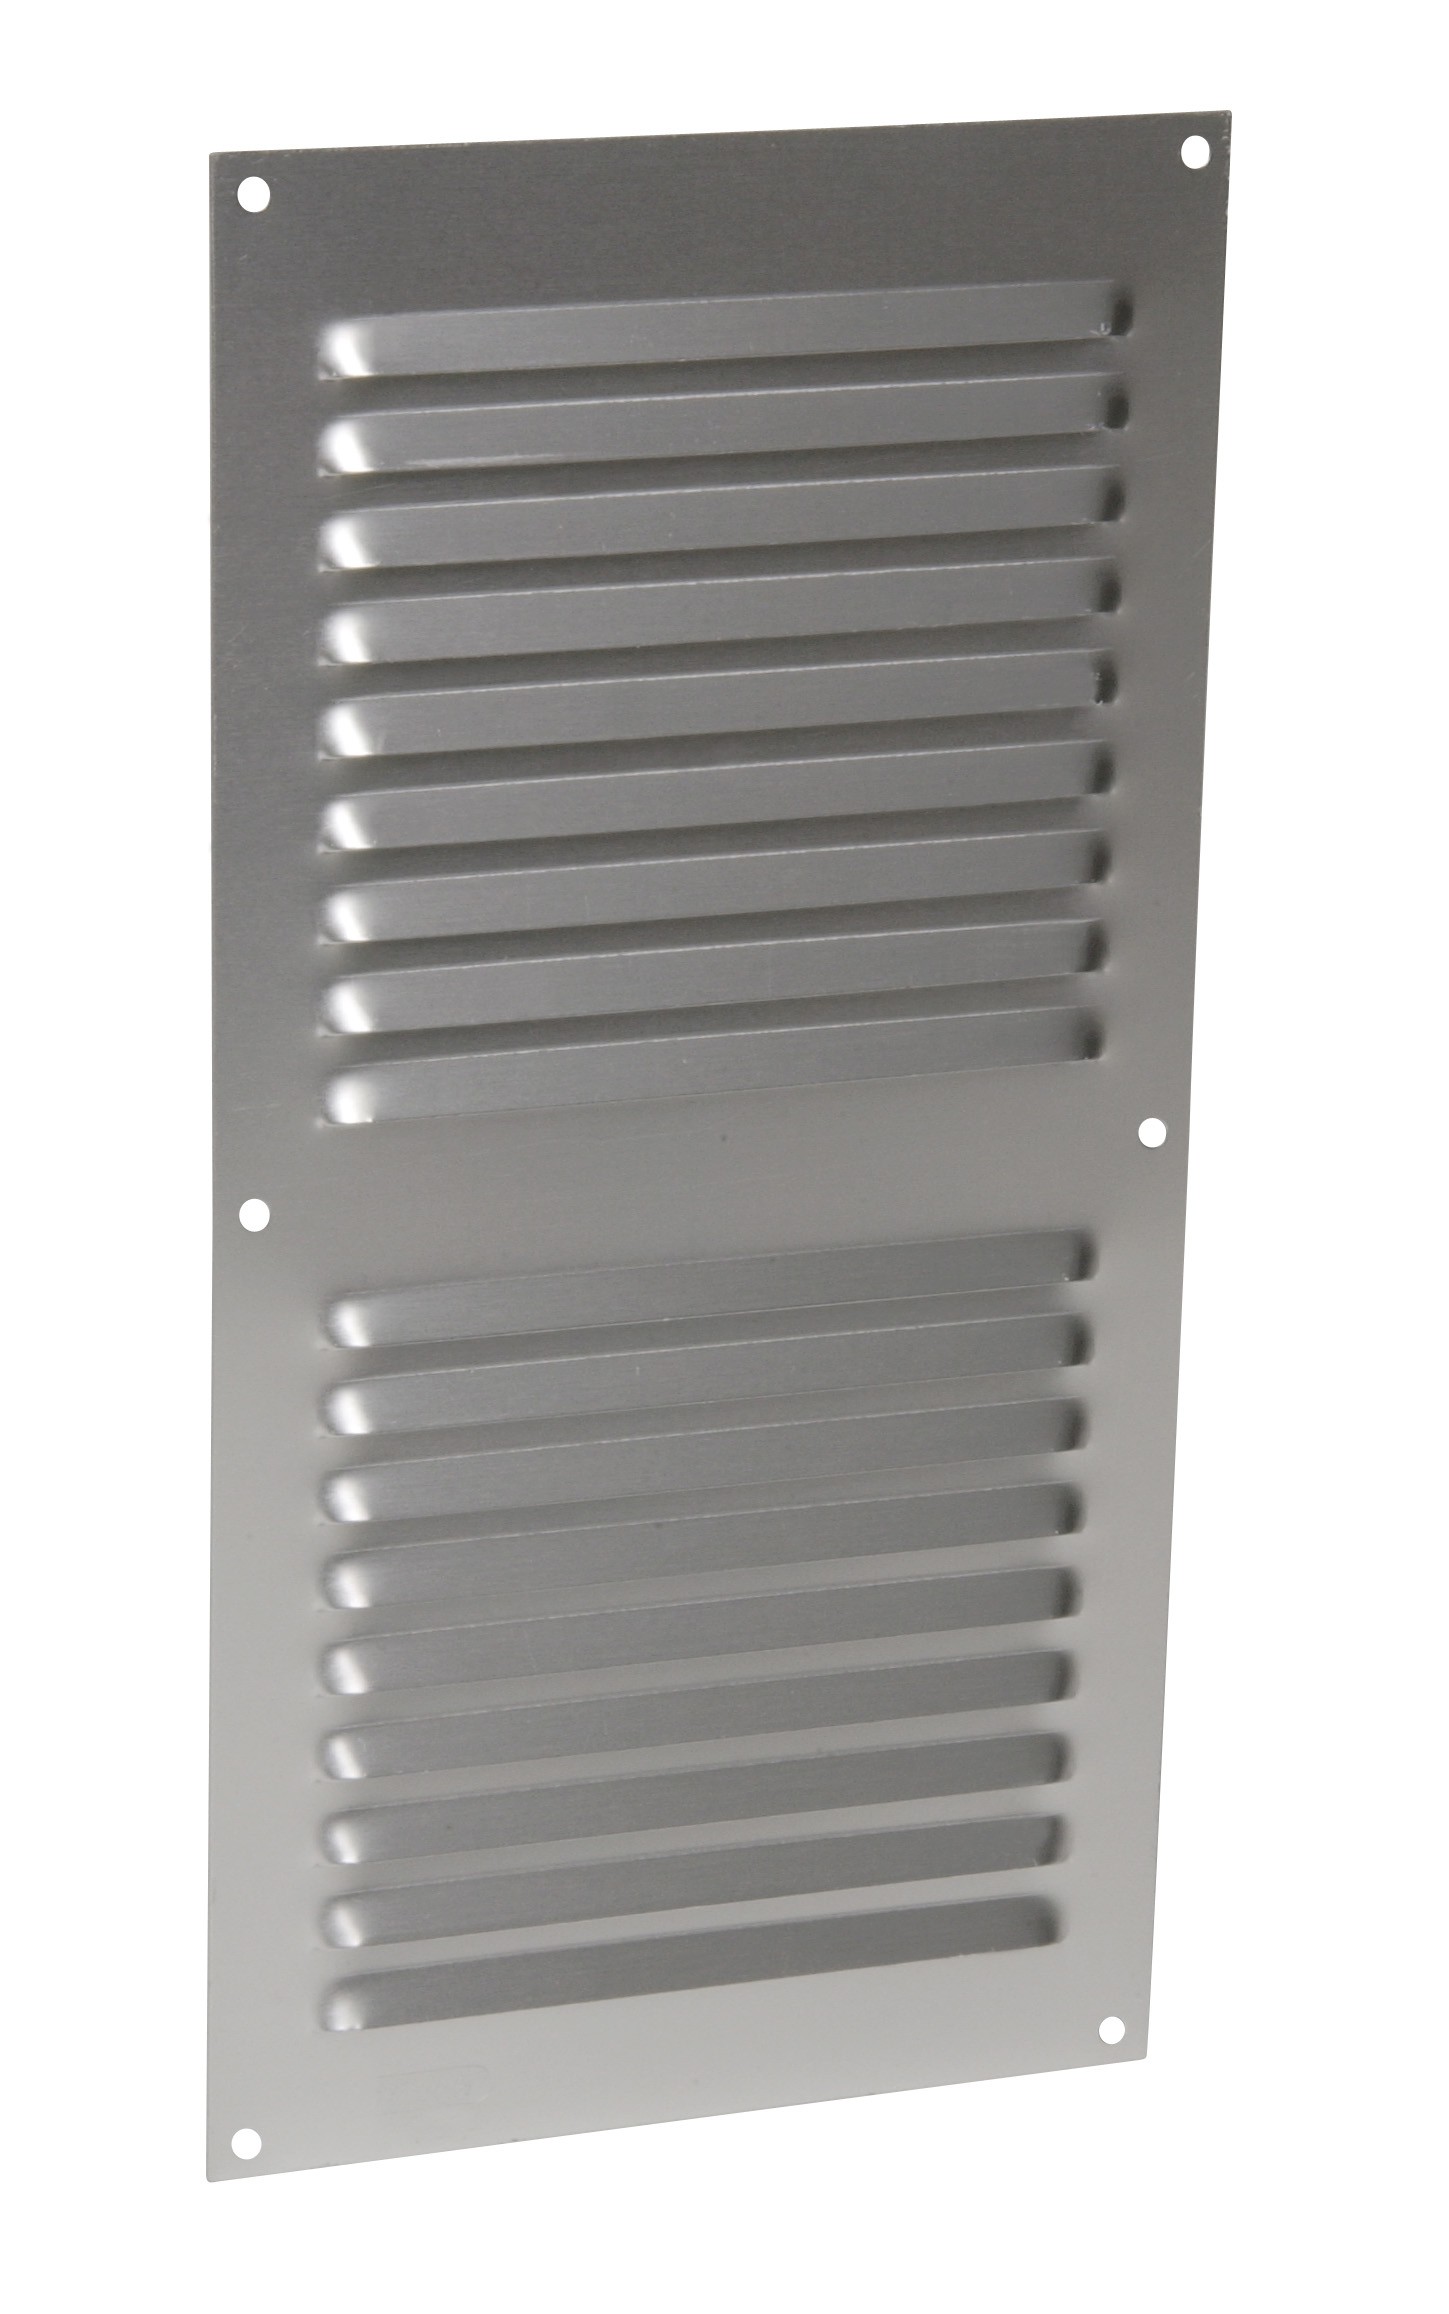 Alluminio anodizzato grigio con schermo: rettangolare verticale 30X15